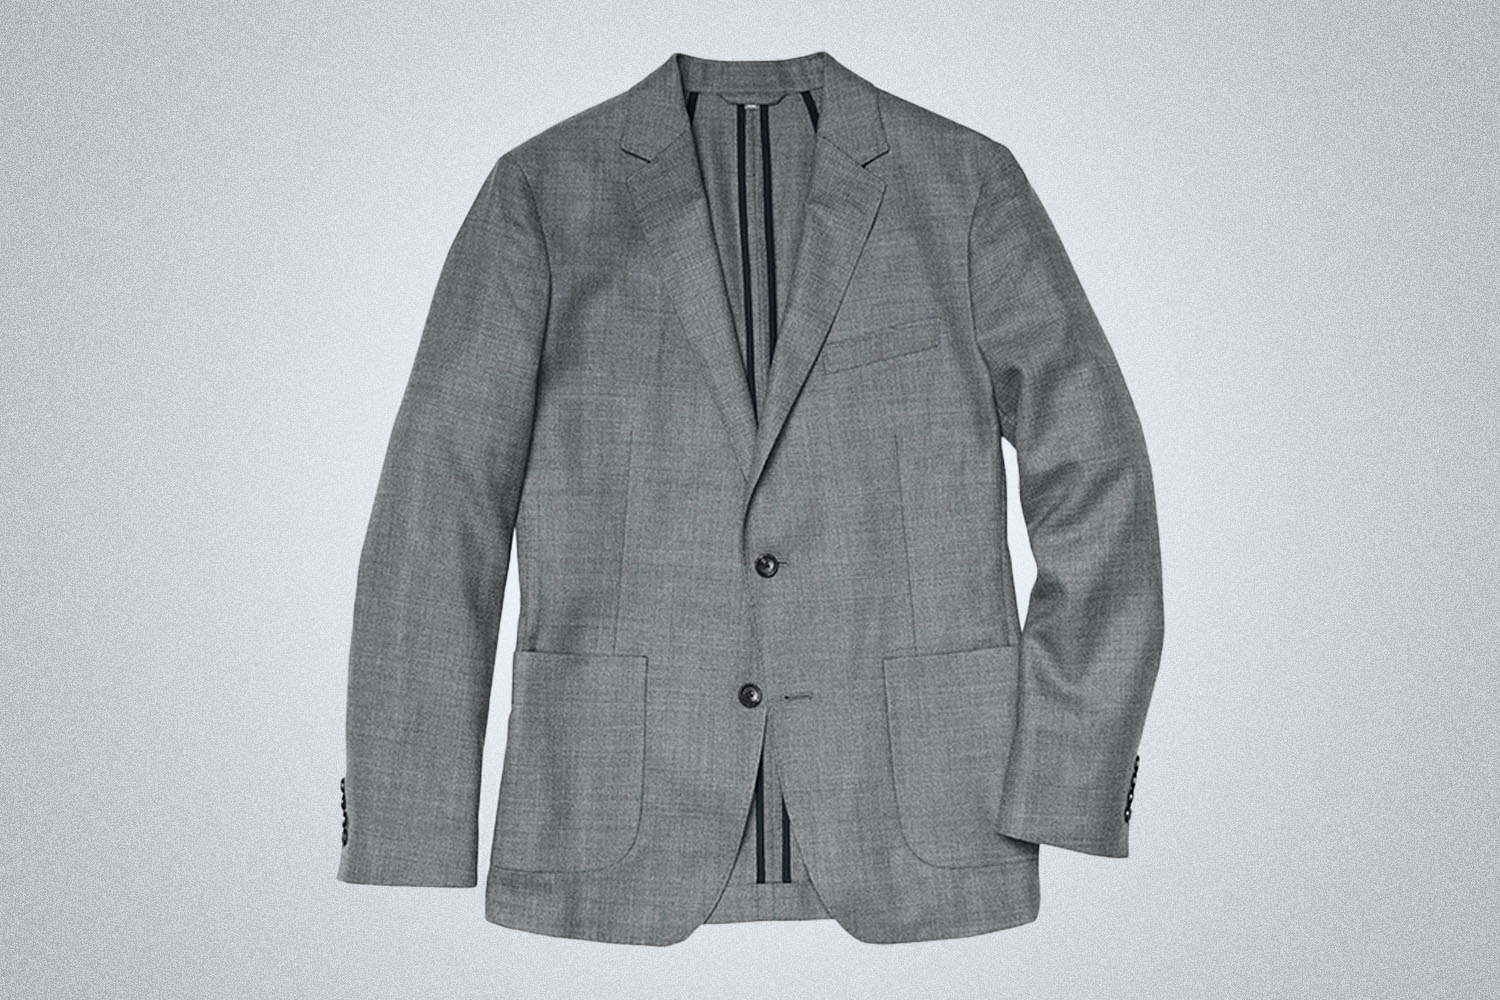 a grey wool blazer on a grey background